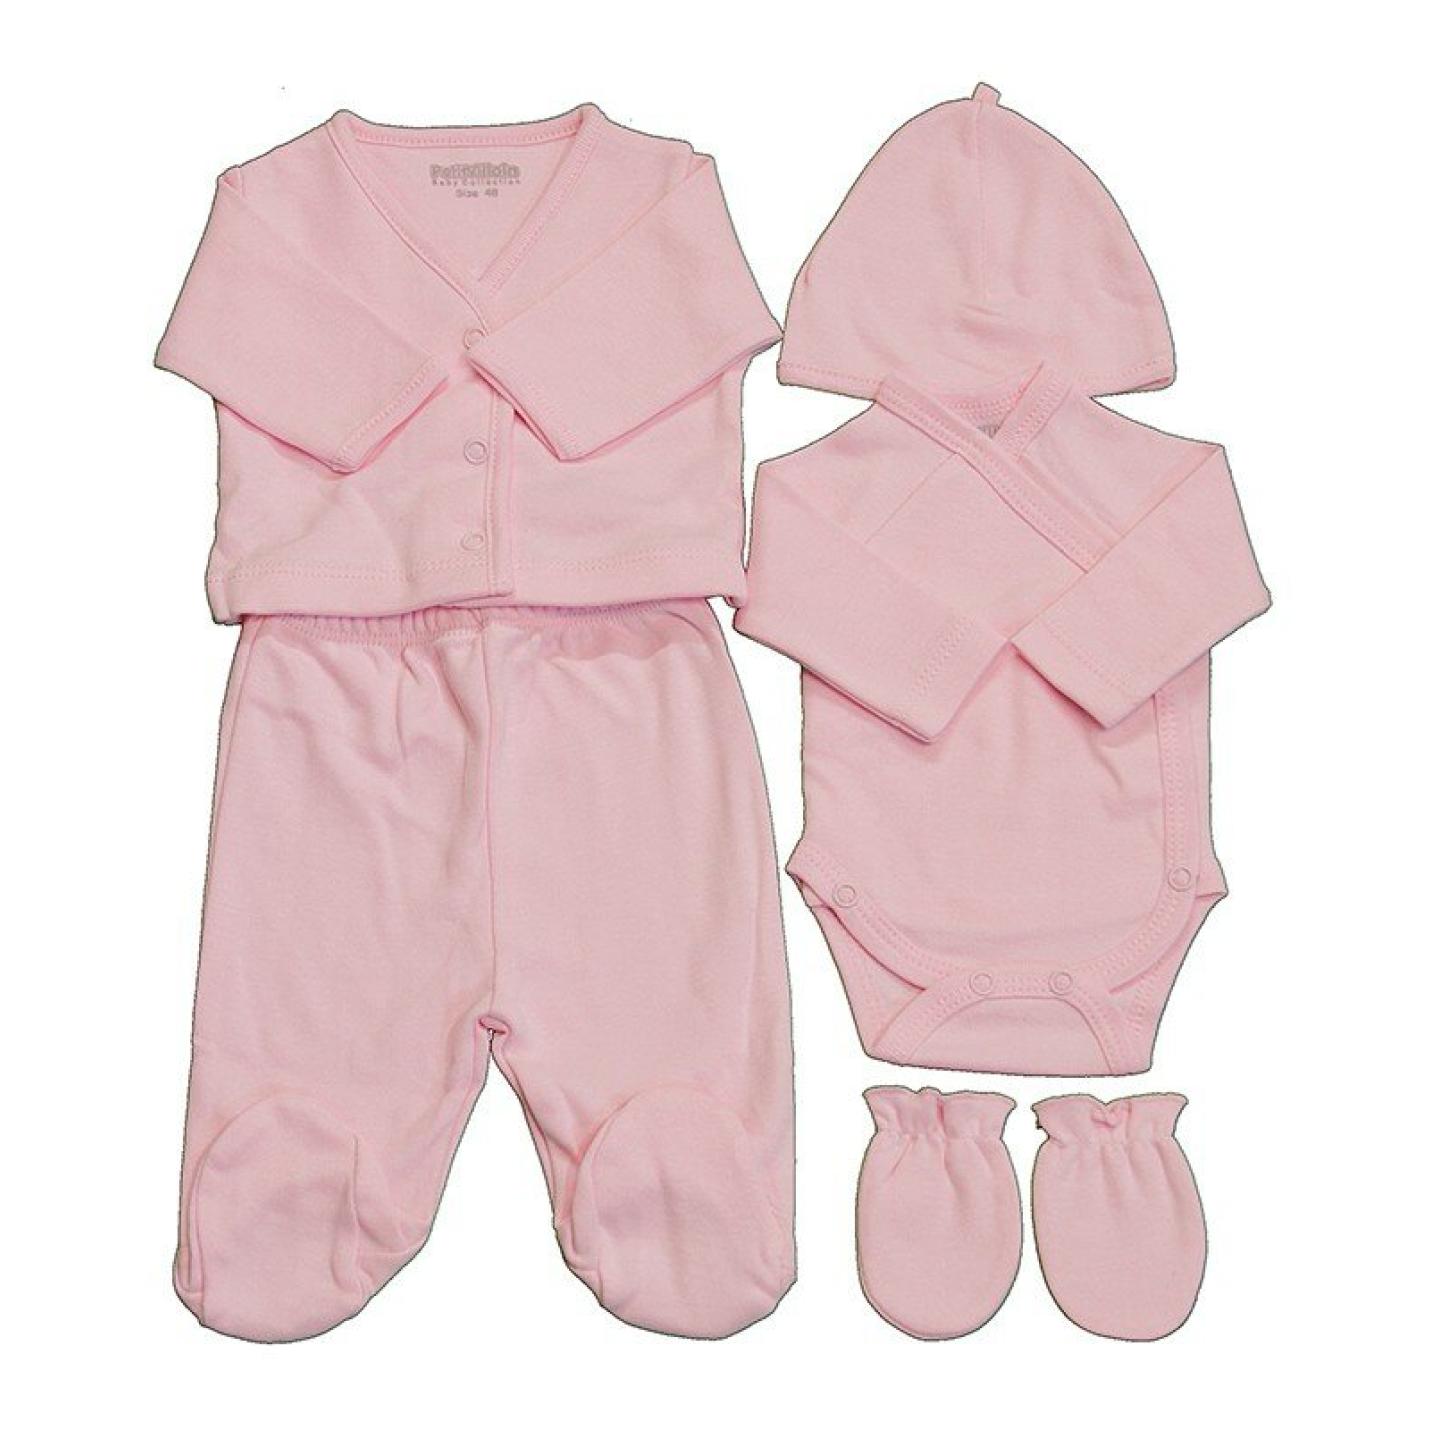 Kledingsetje Prematuur Roze is baby muts, broek, wantjes, romper en vestje roze kleur